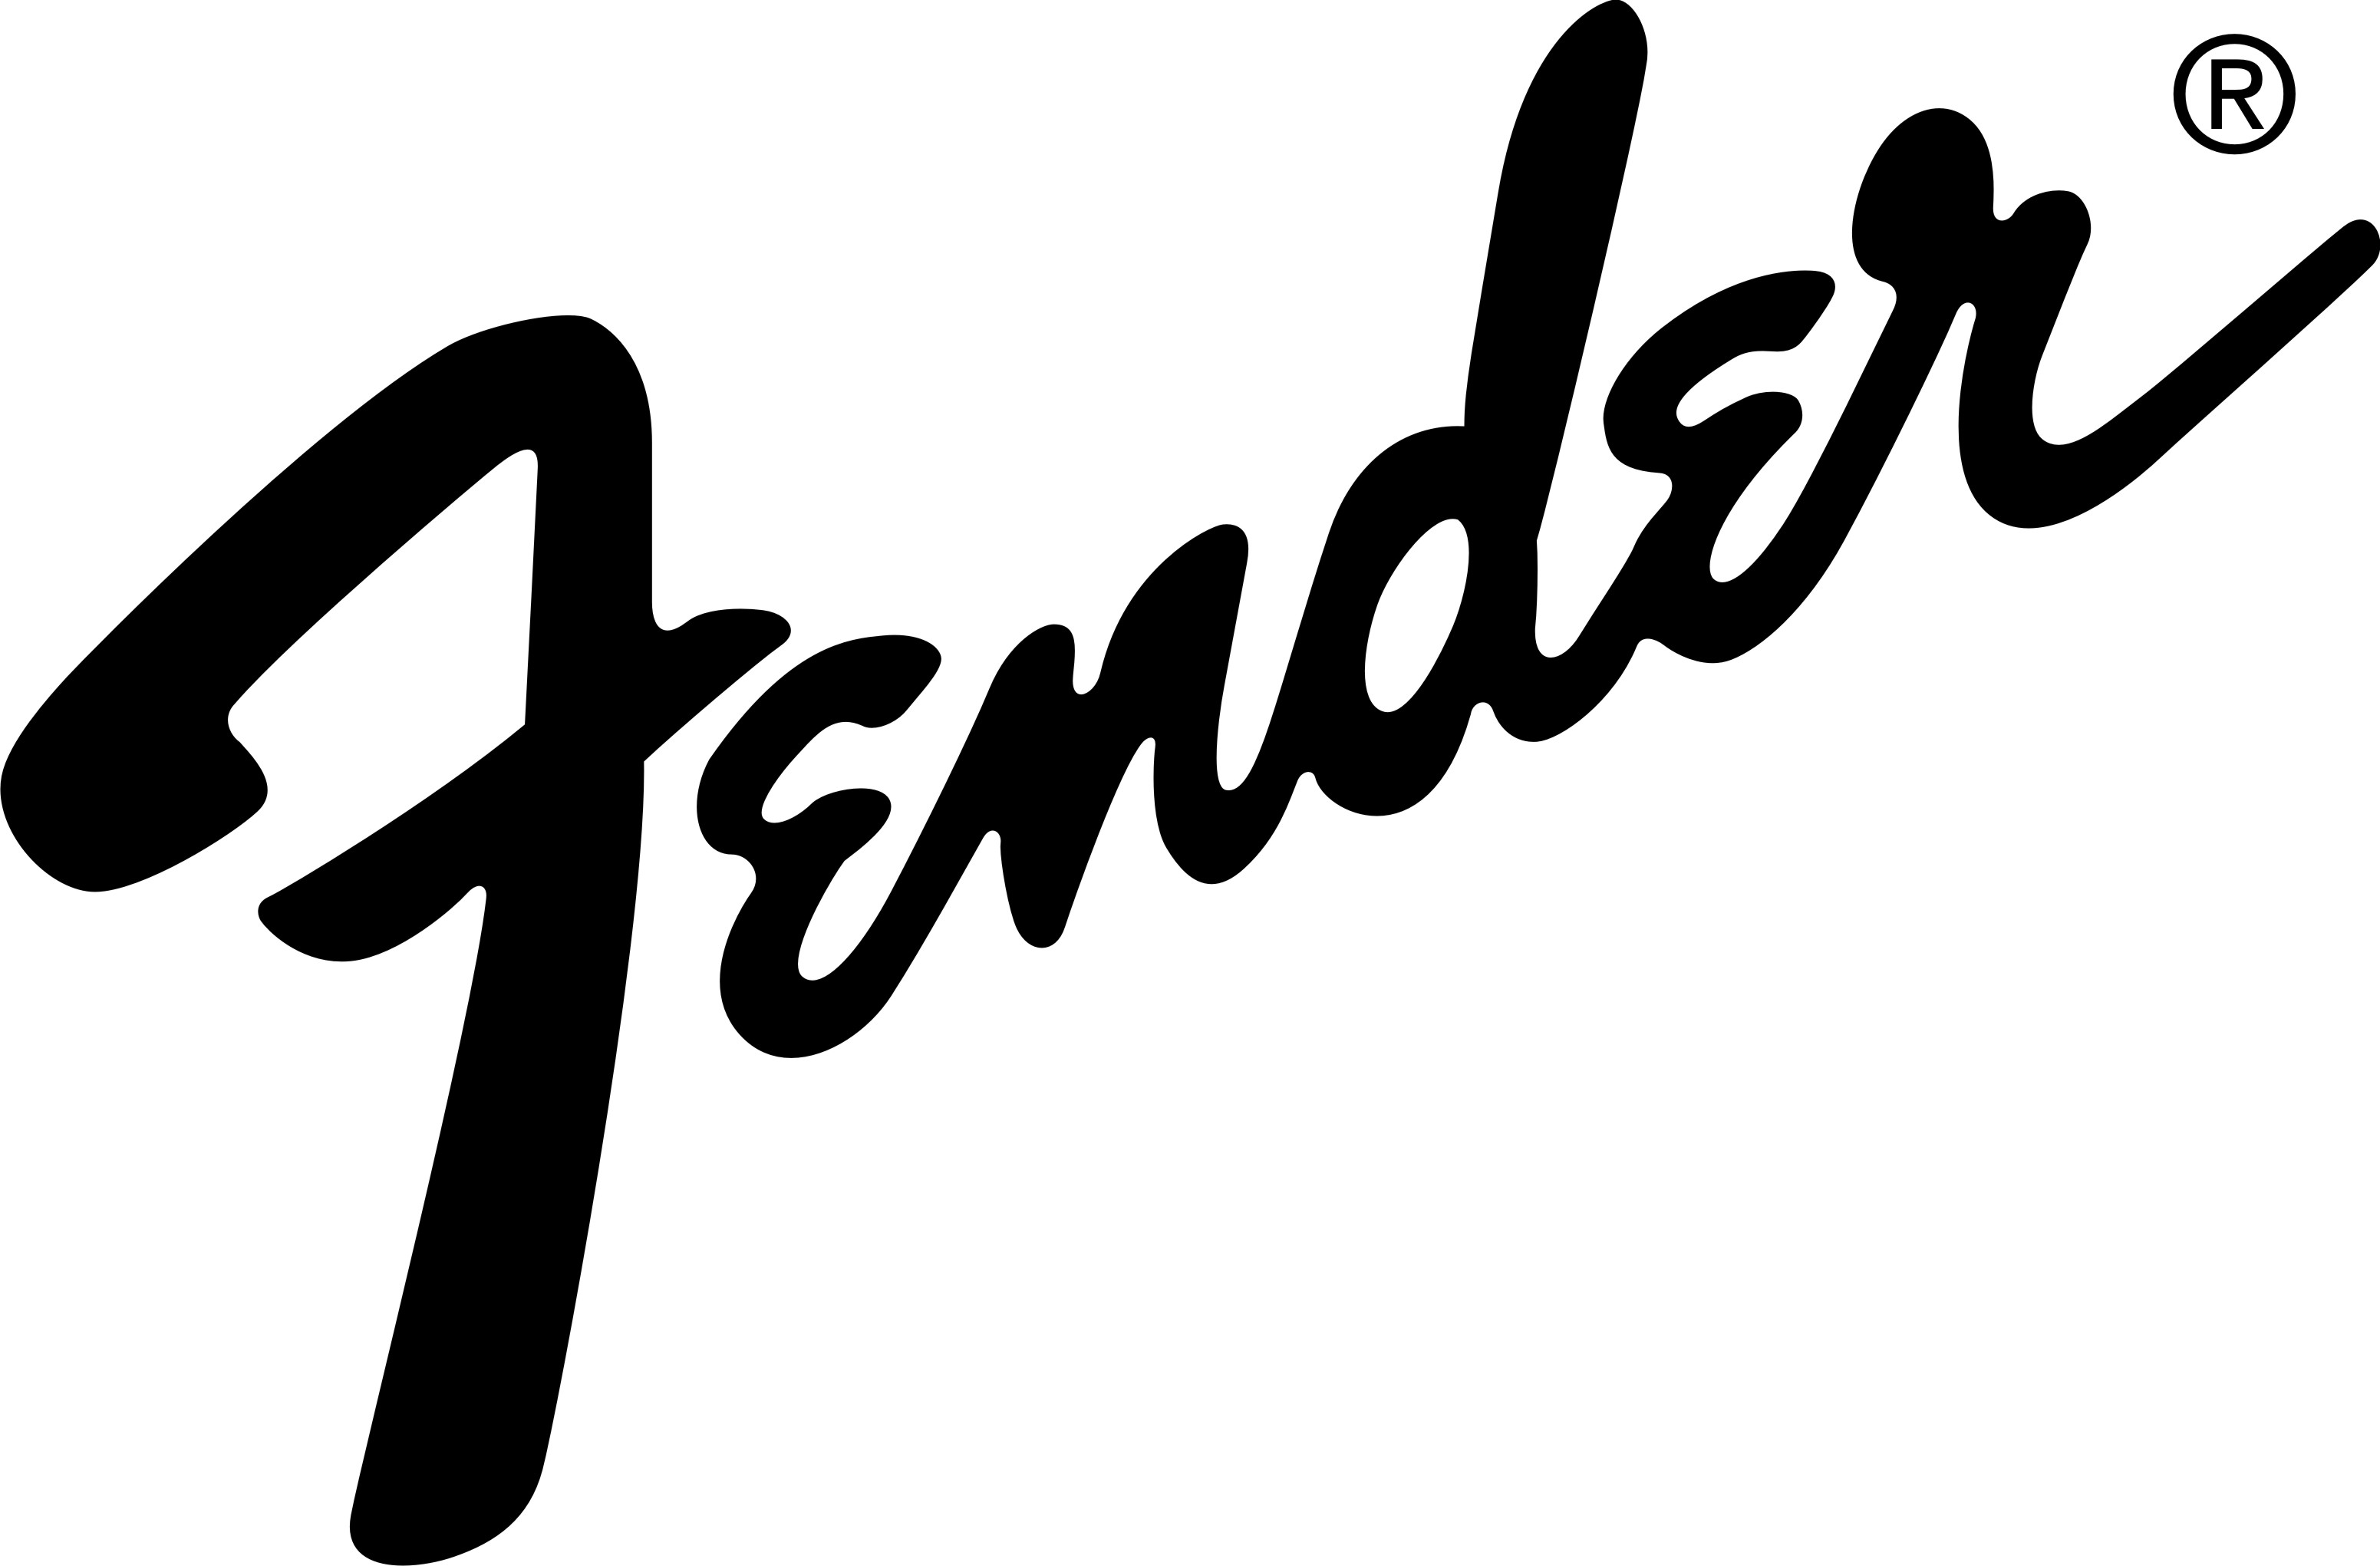 Fender logo clipart.